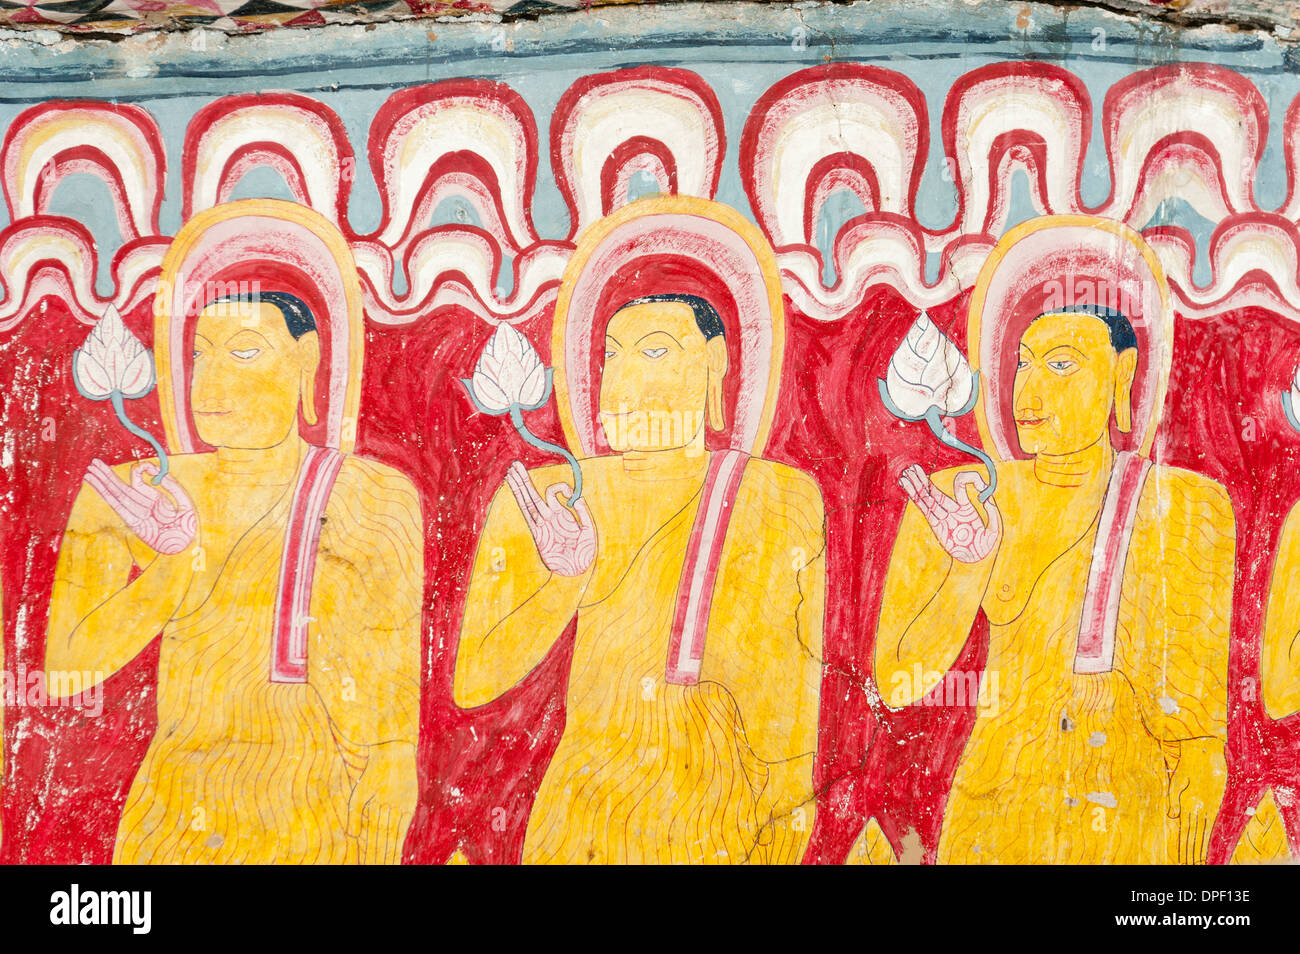 Peinture murale colorée, fresque, trois moines debout à côté de l'autre tenant une fleur de lotus dans une main Banque D'Images